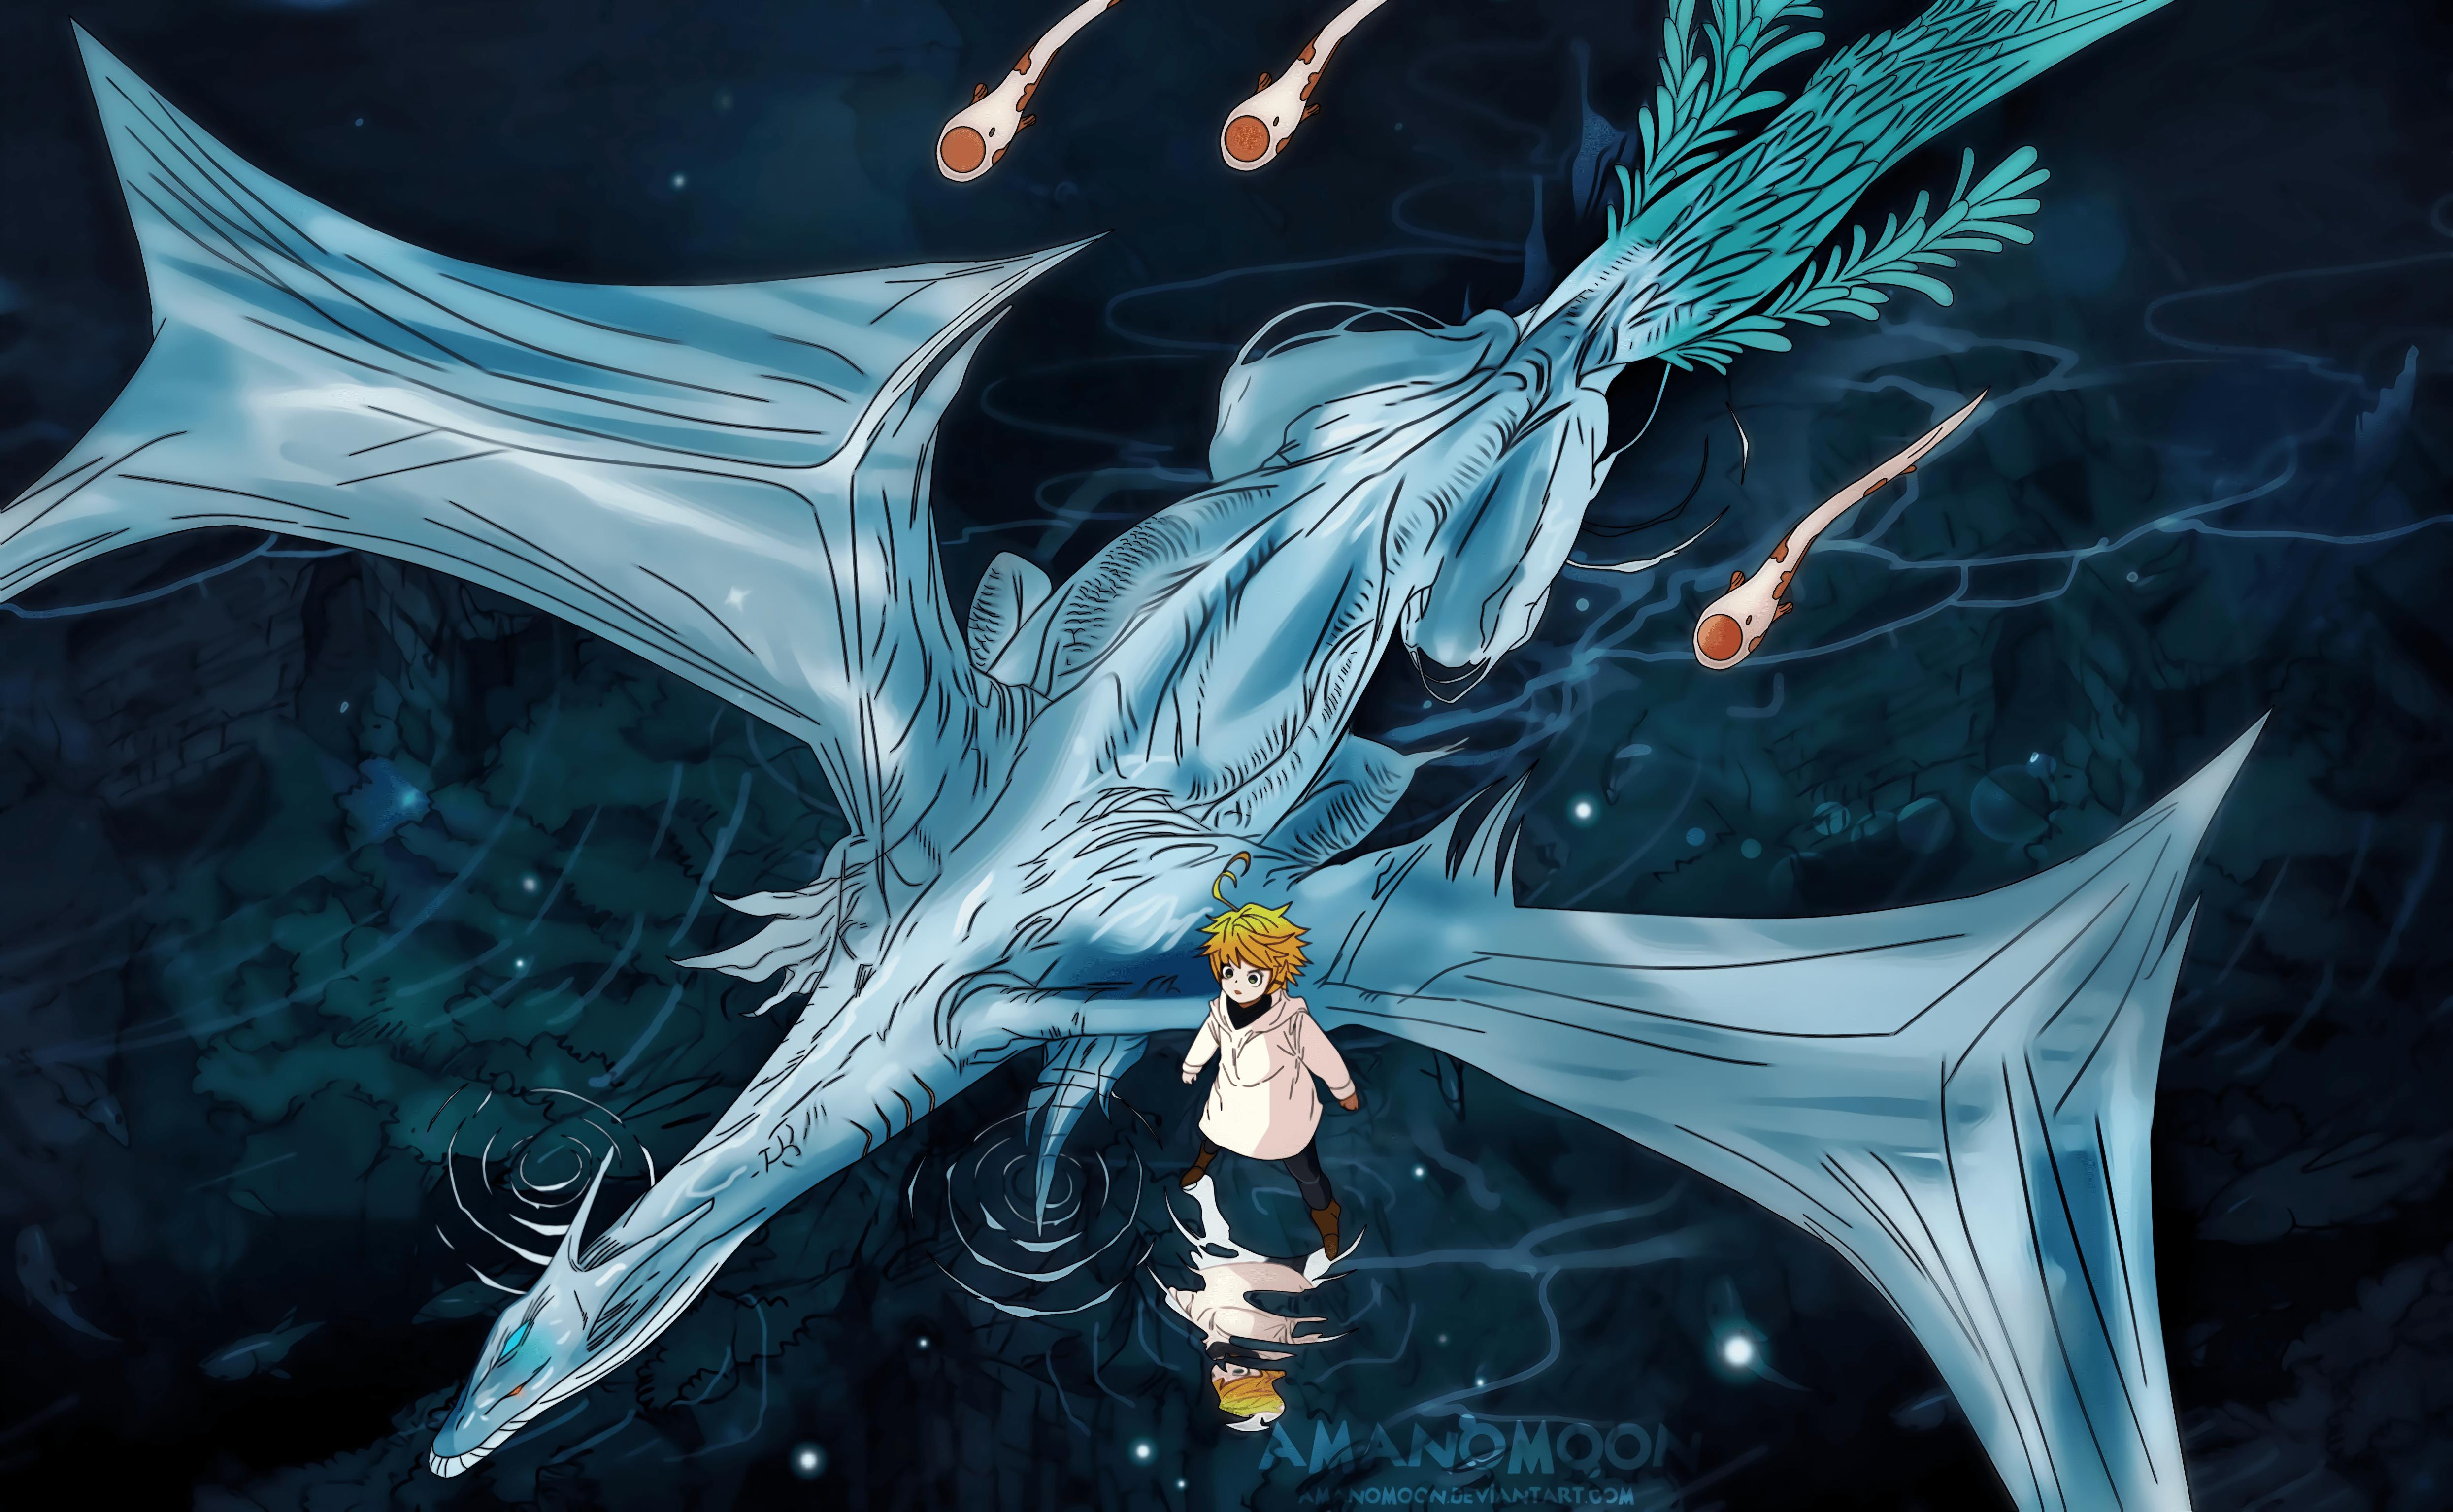 The Promised Neverland Desktop Wallpaper Full Screen, The Promised Neverland, Anime